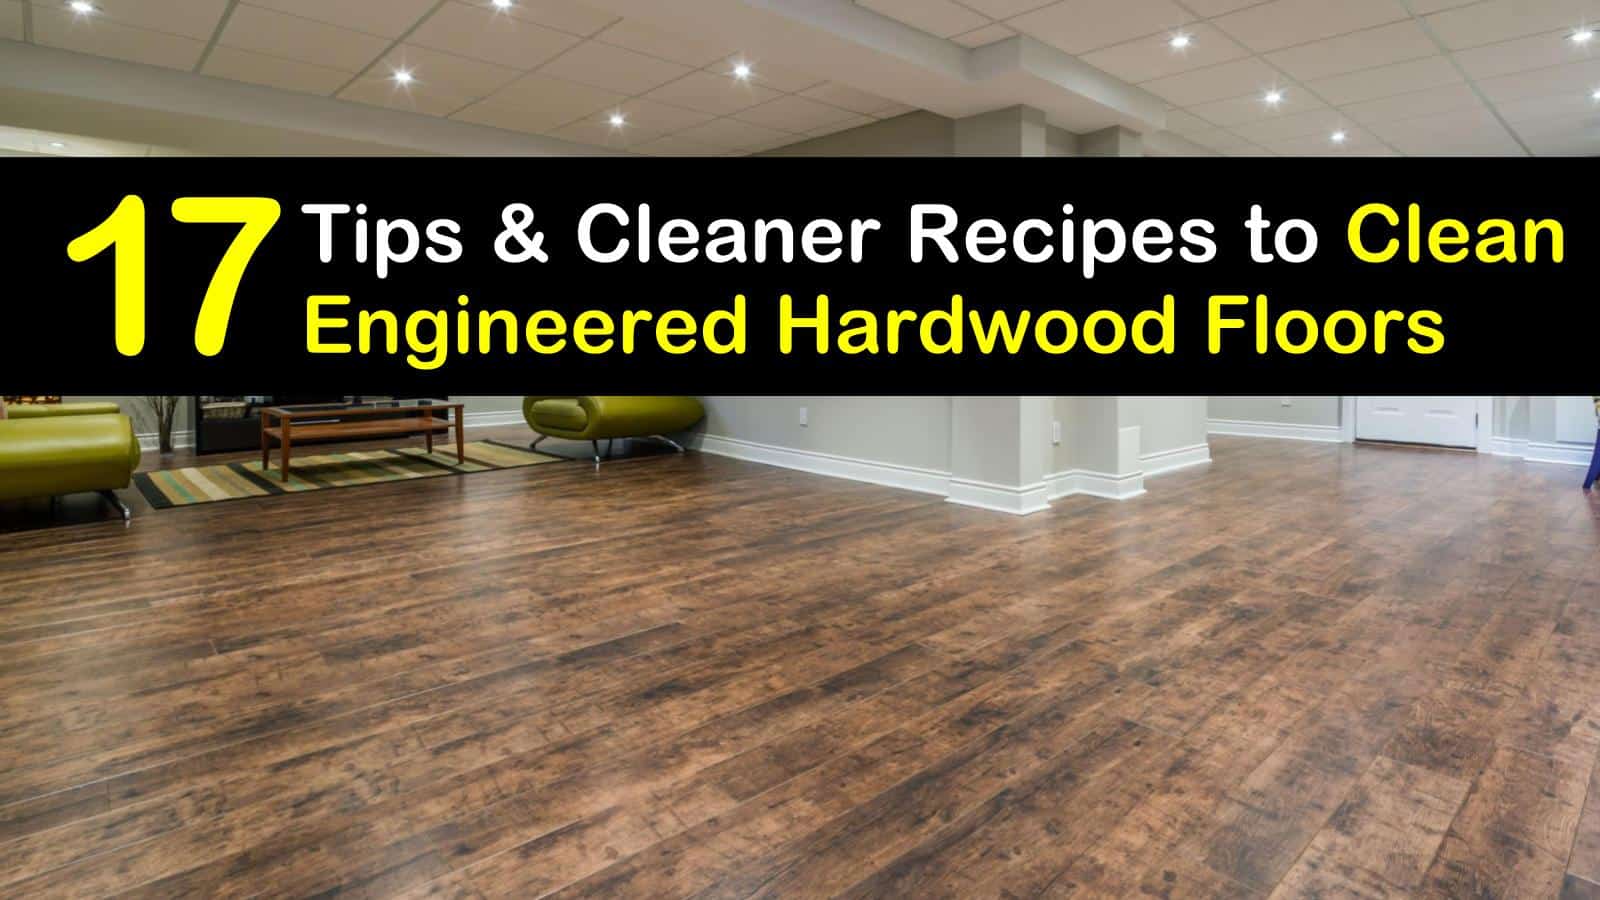 Clean Engineered Hardwood Floors, Can You Use Vinegar On Hardwood Floors